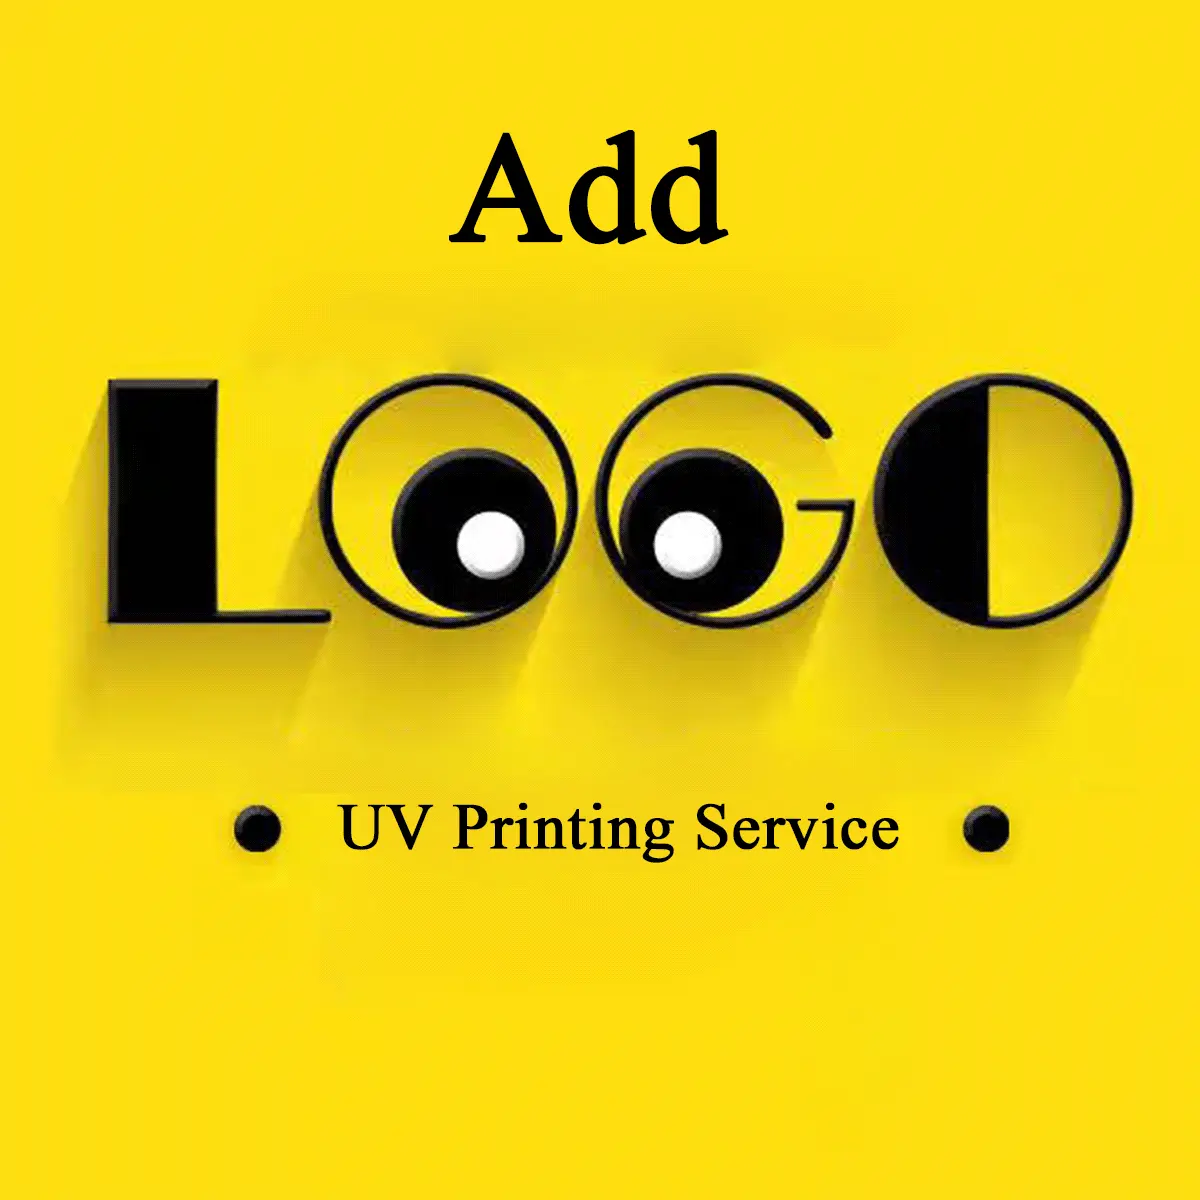 UVプリントサービスカスタムTシャツアクリルウッドレーザー彫刻UVプリントサービス製品ロゴを追加できます